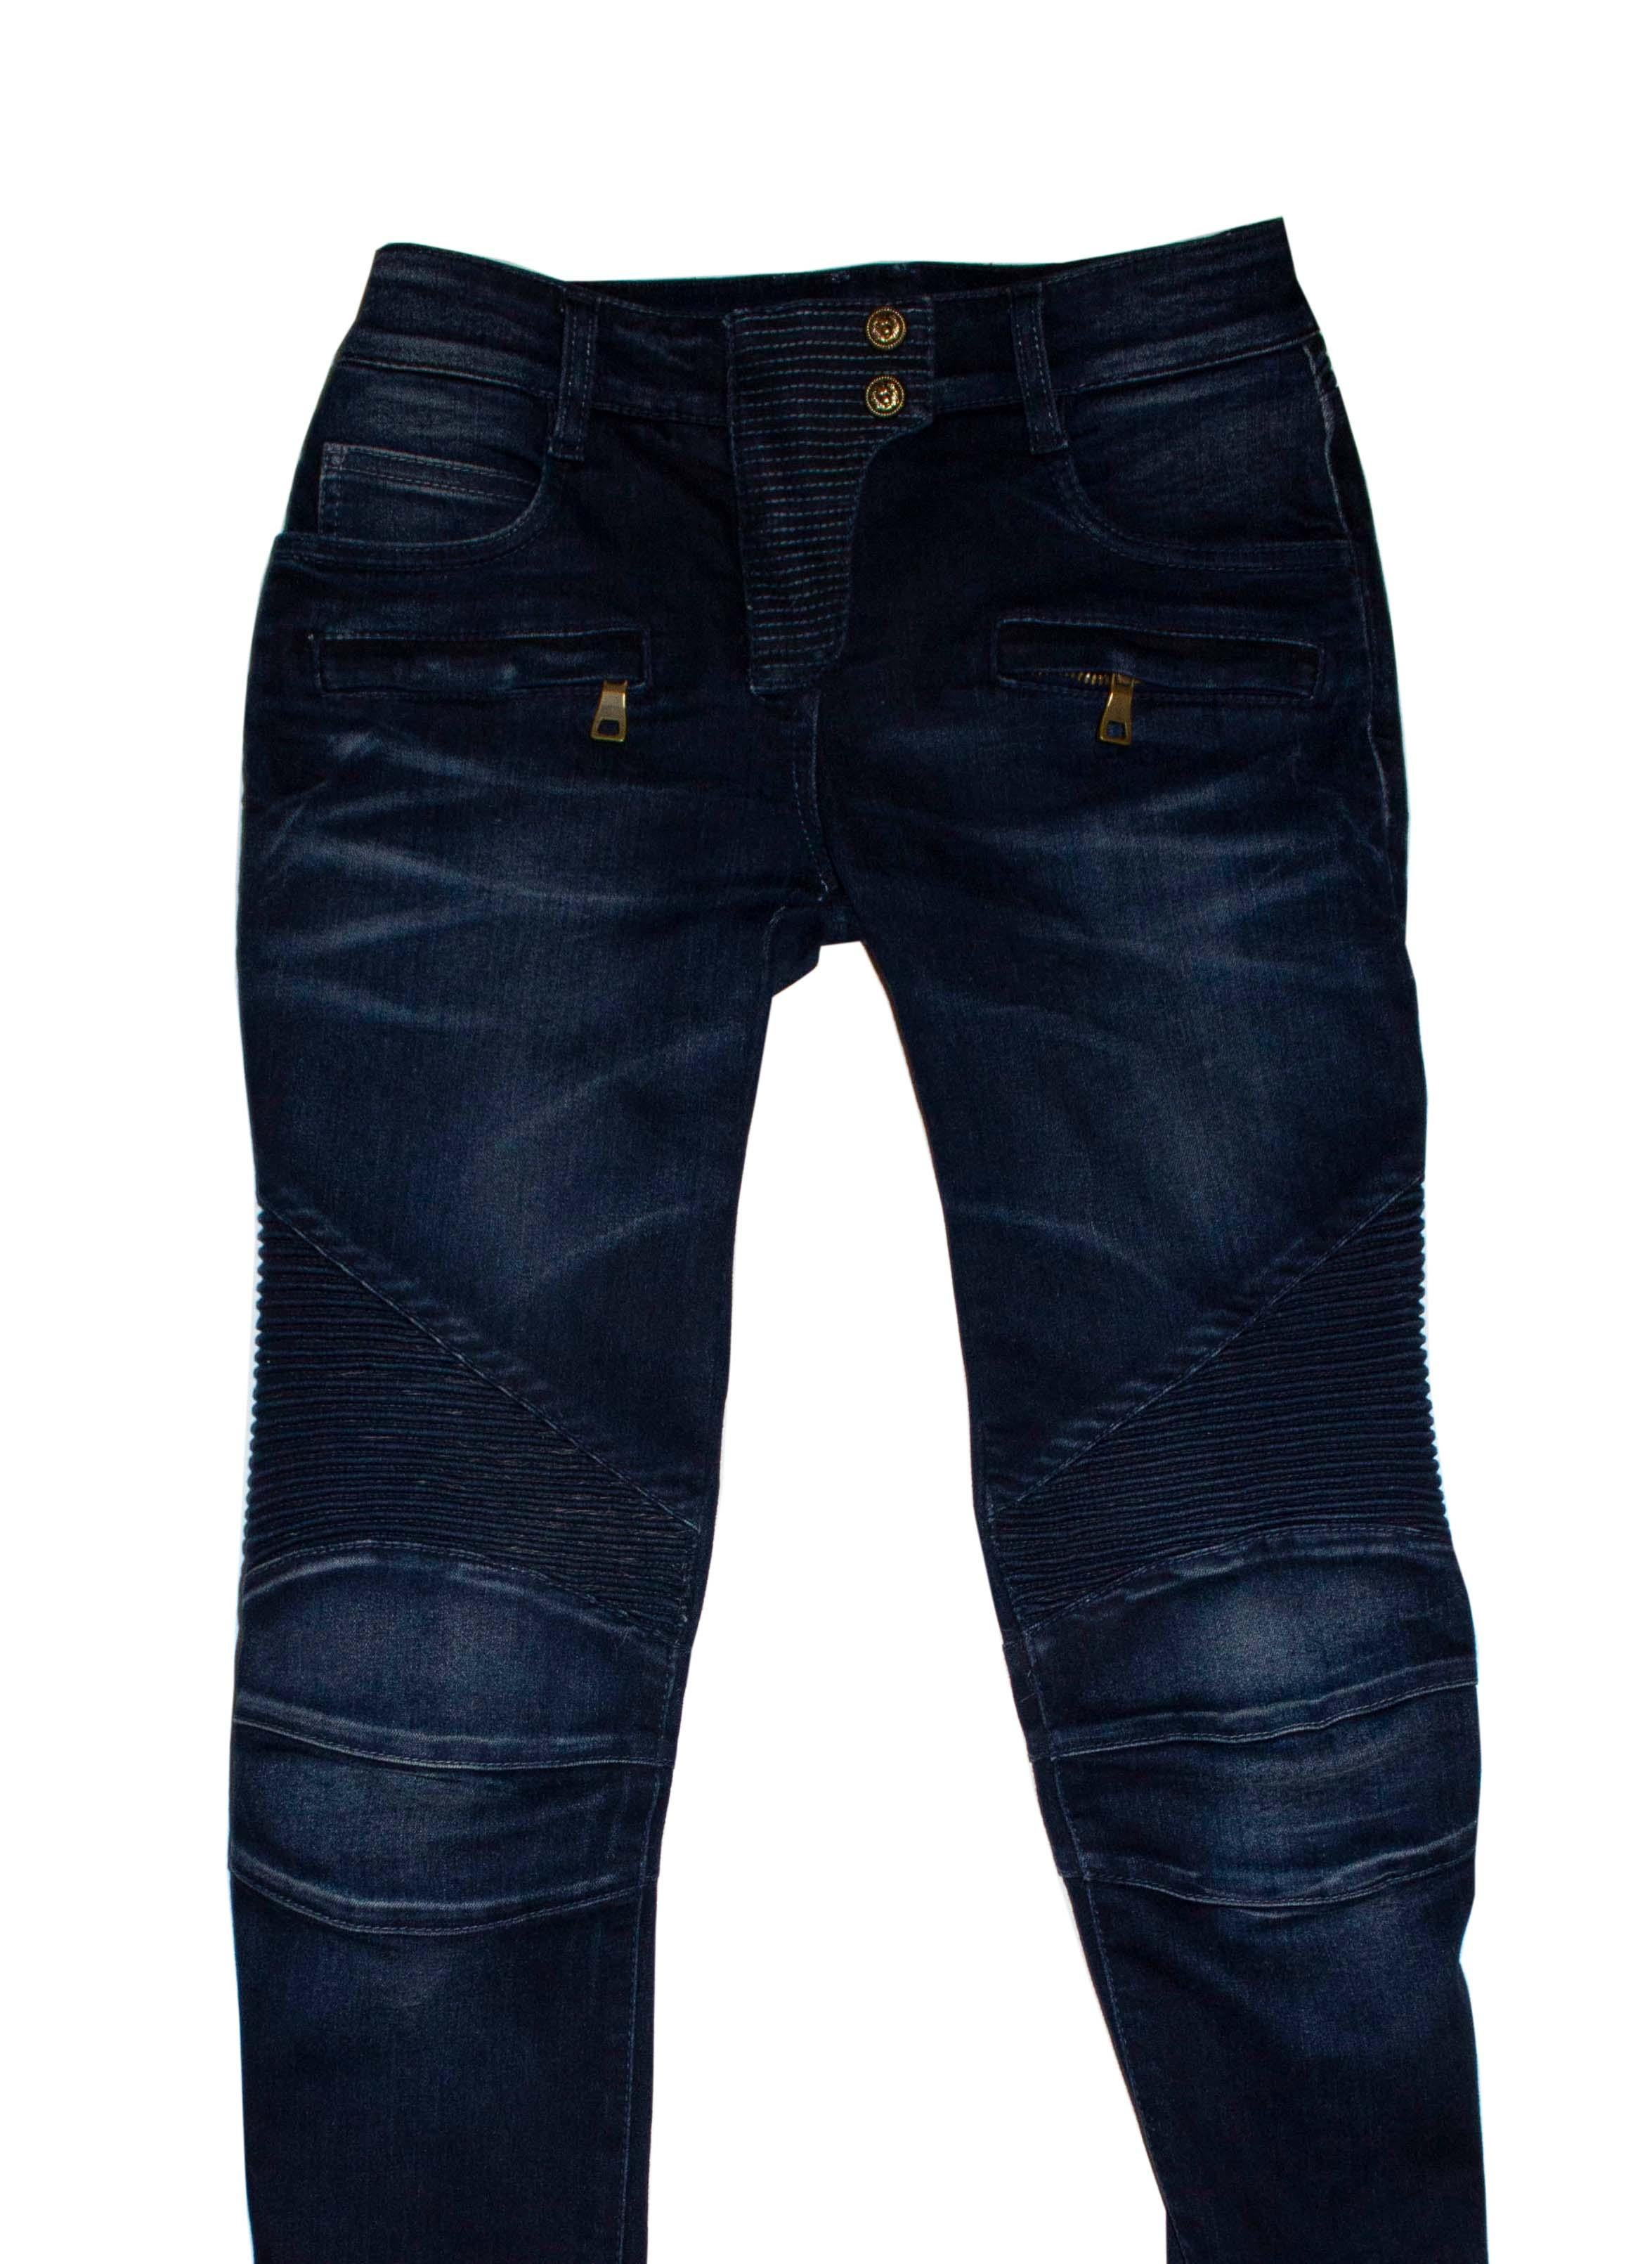 Black Balmain Blue Jeans For Sale